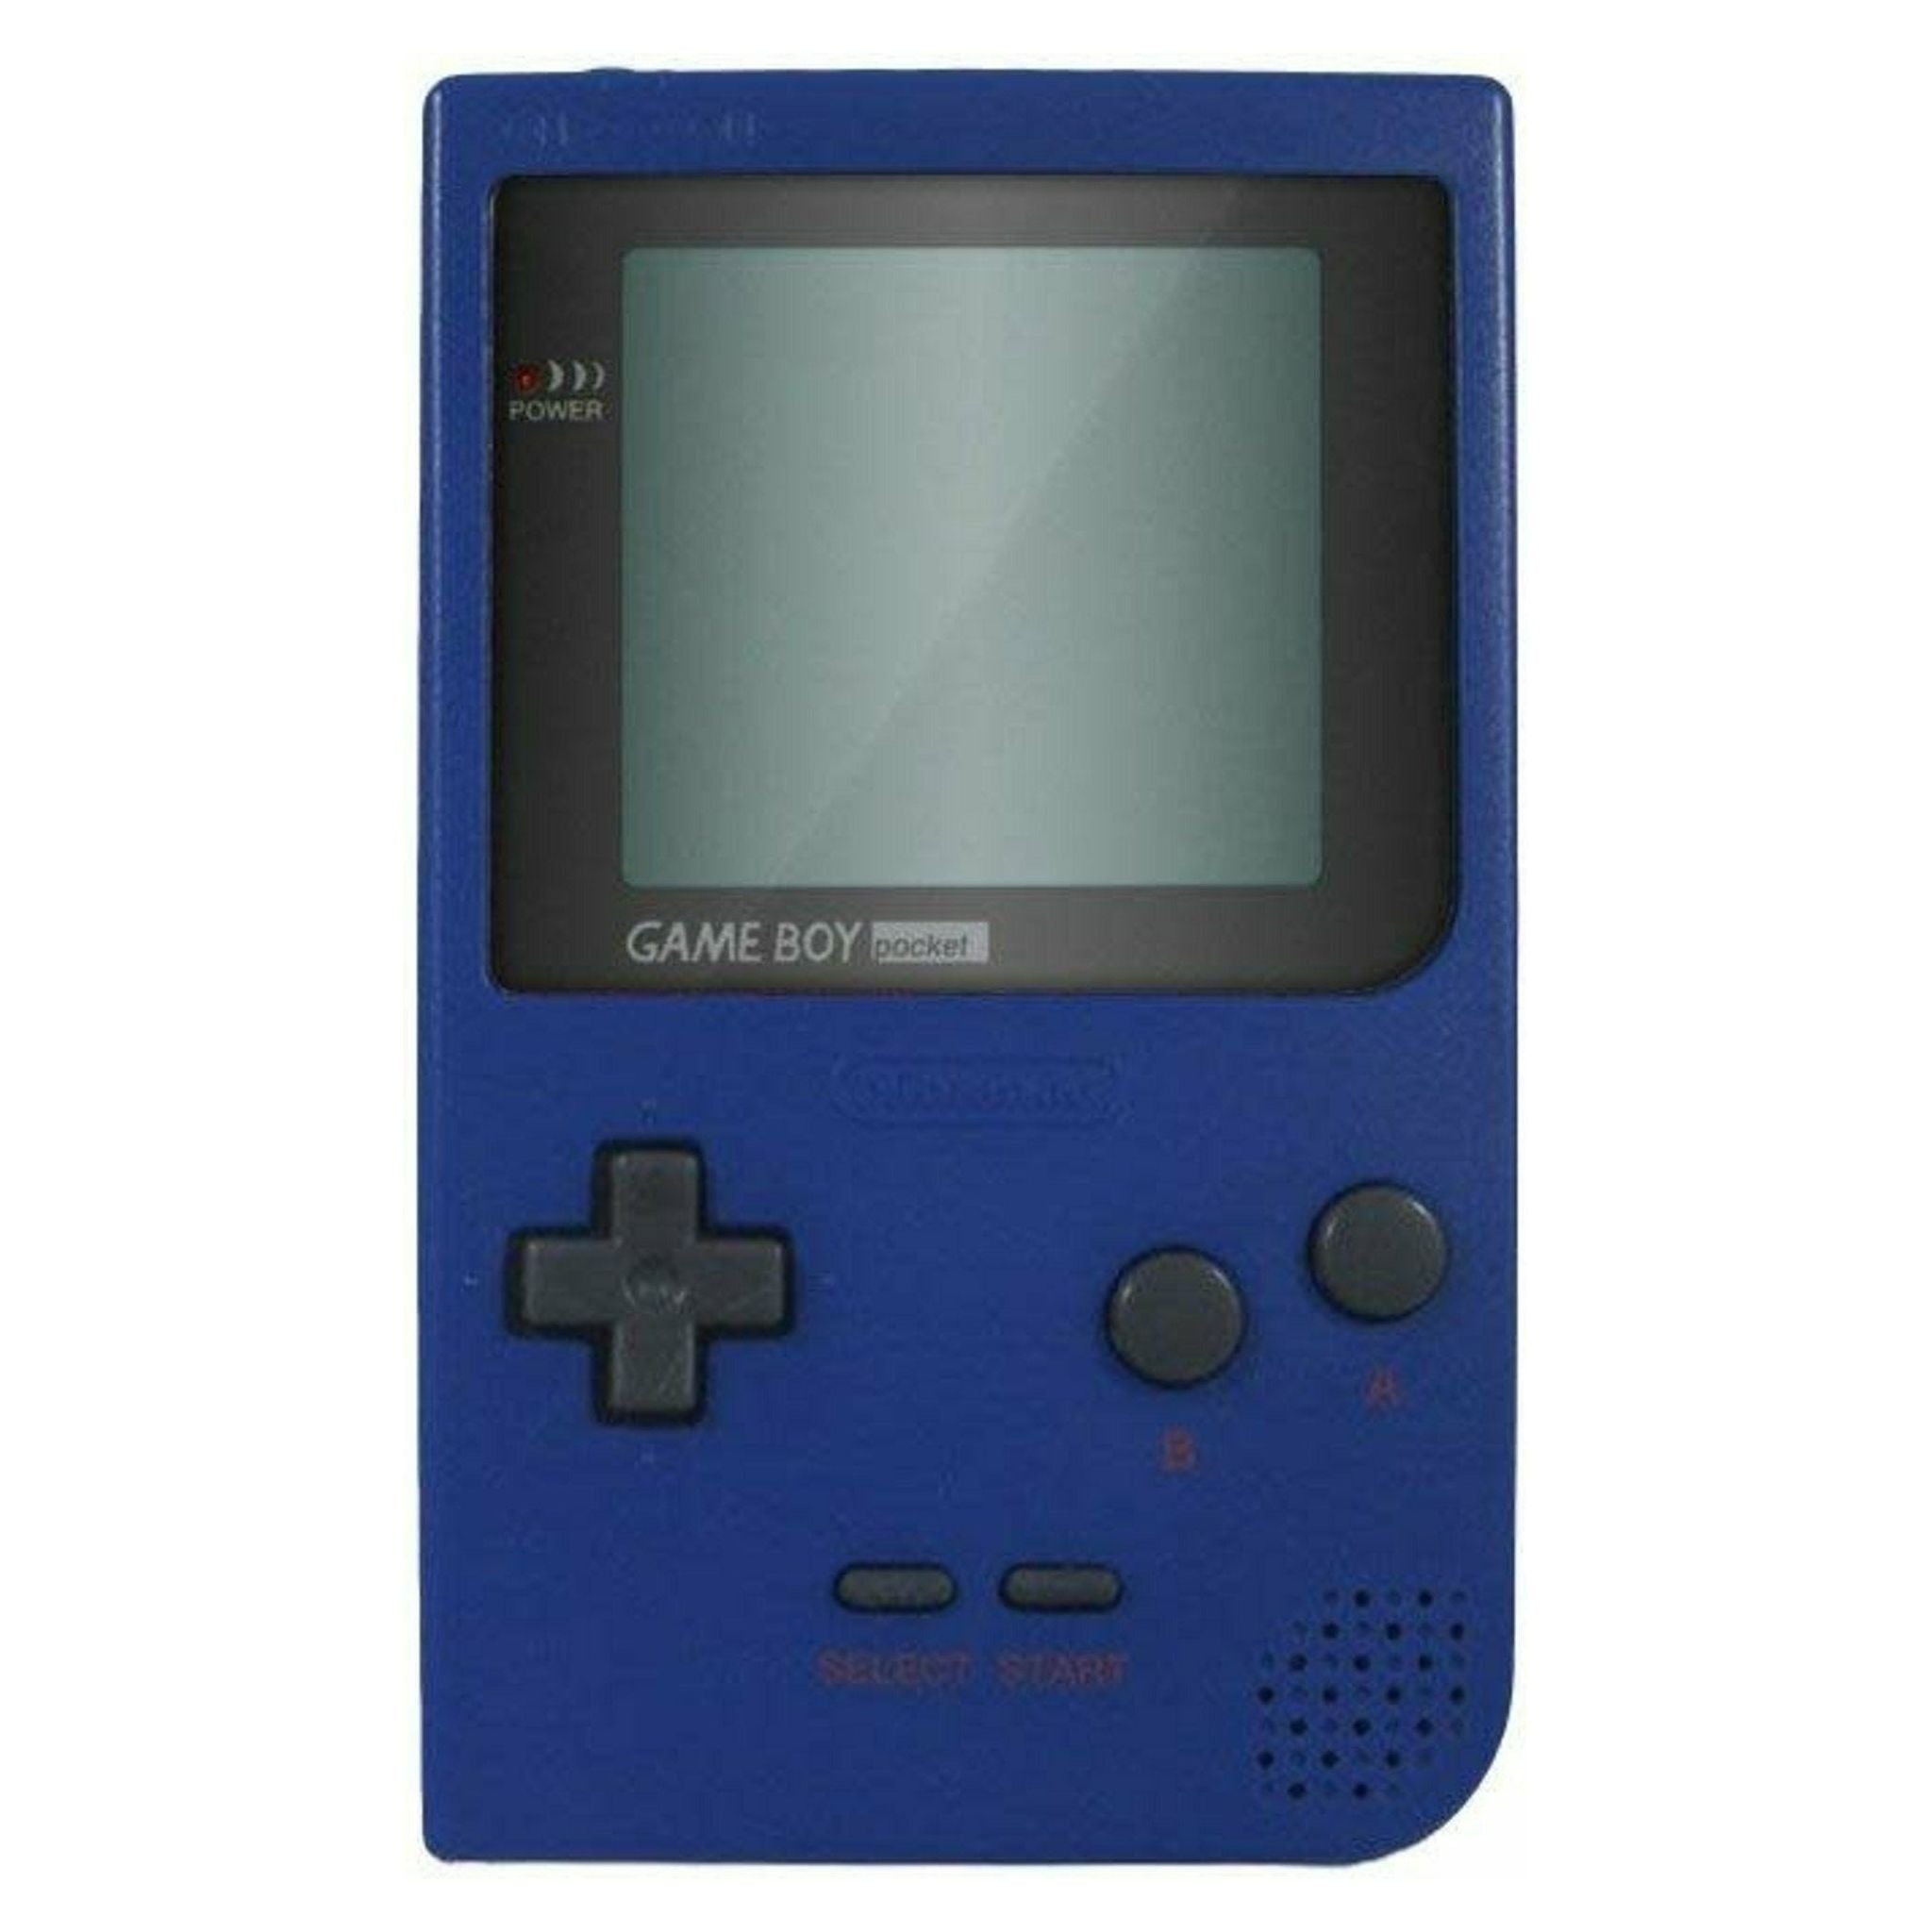 Game Boy Pocket System (Blue)